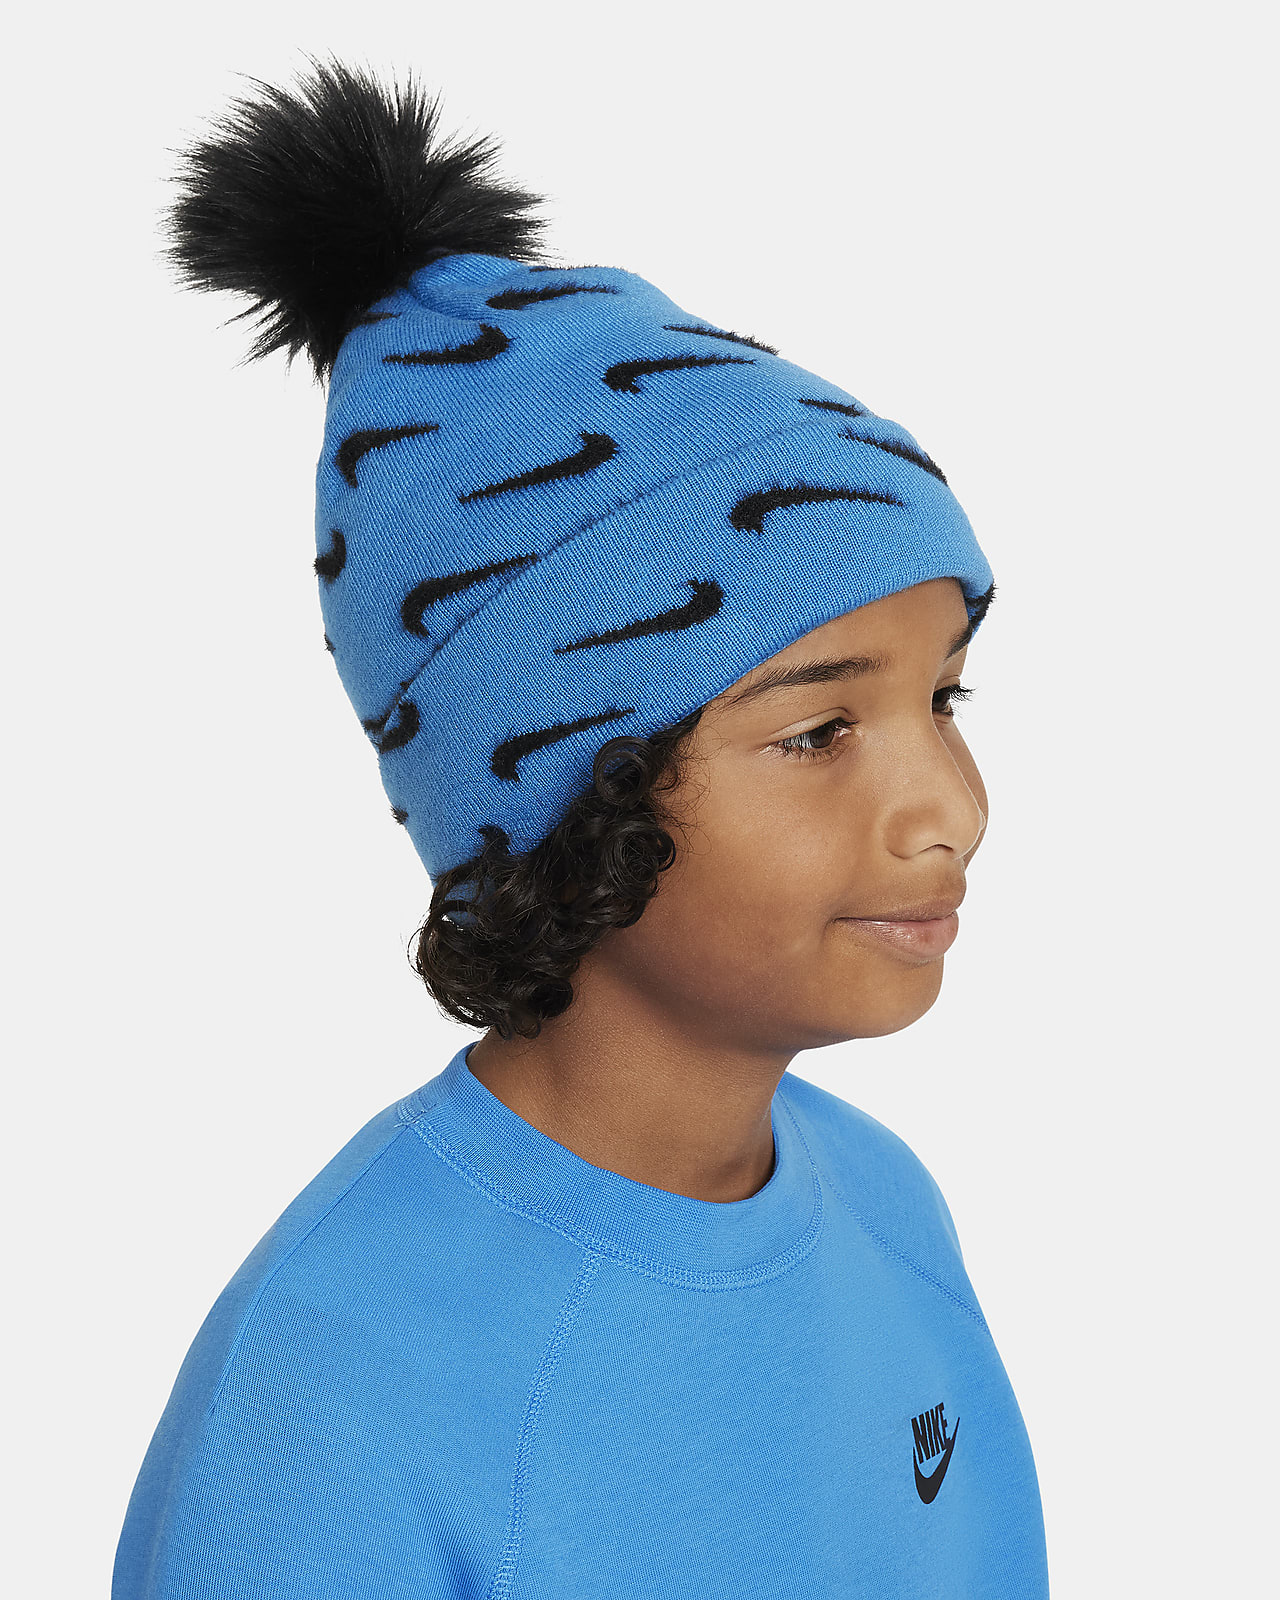 Bonnet à pompon, bonnet d'hiver, bonnet pour enfants, bonnet en